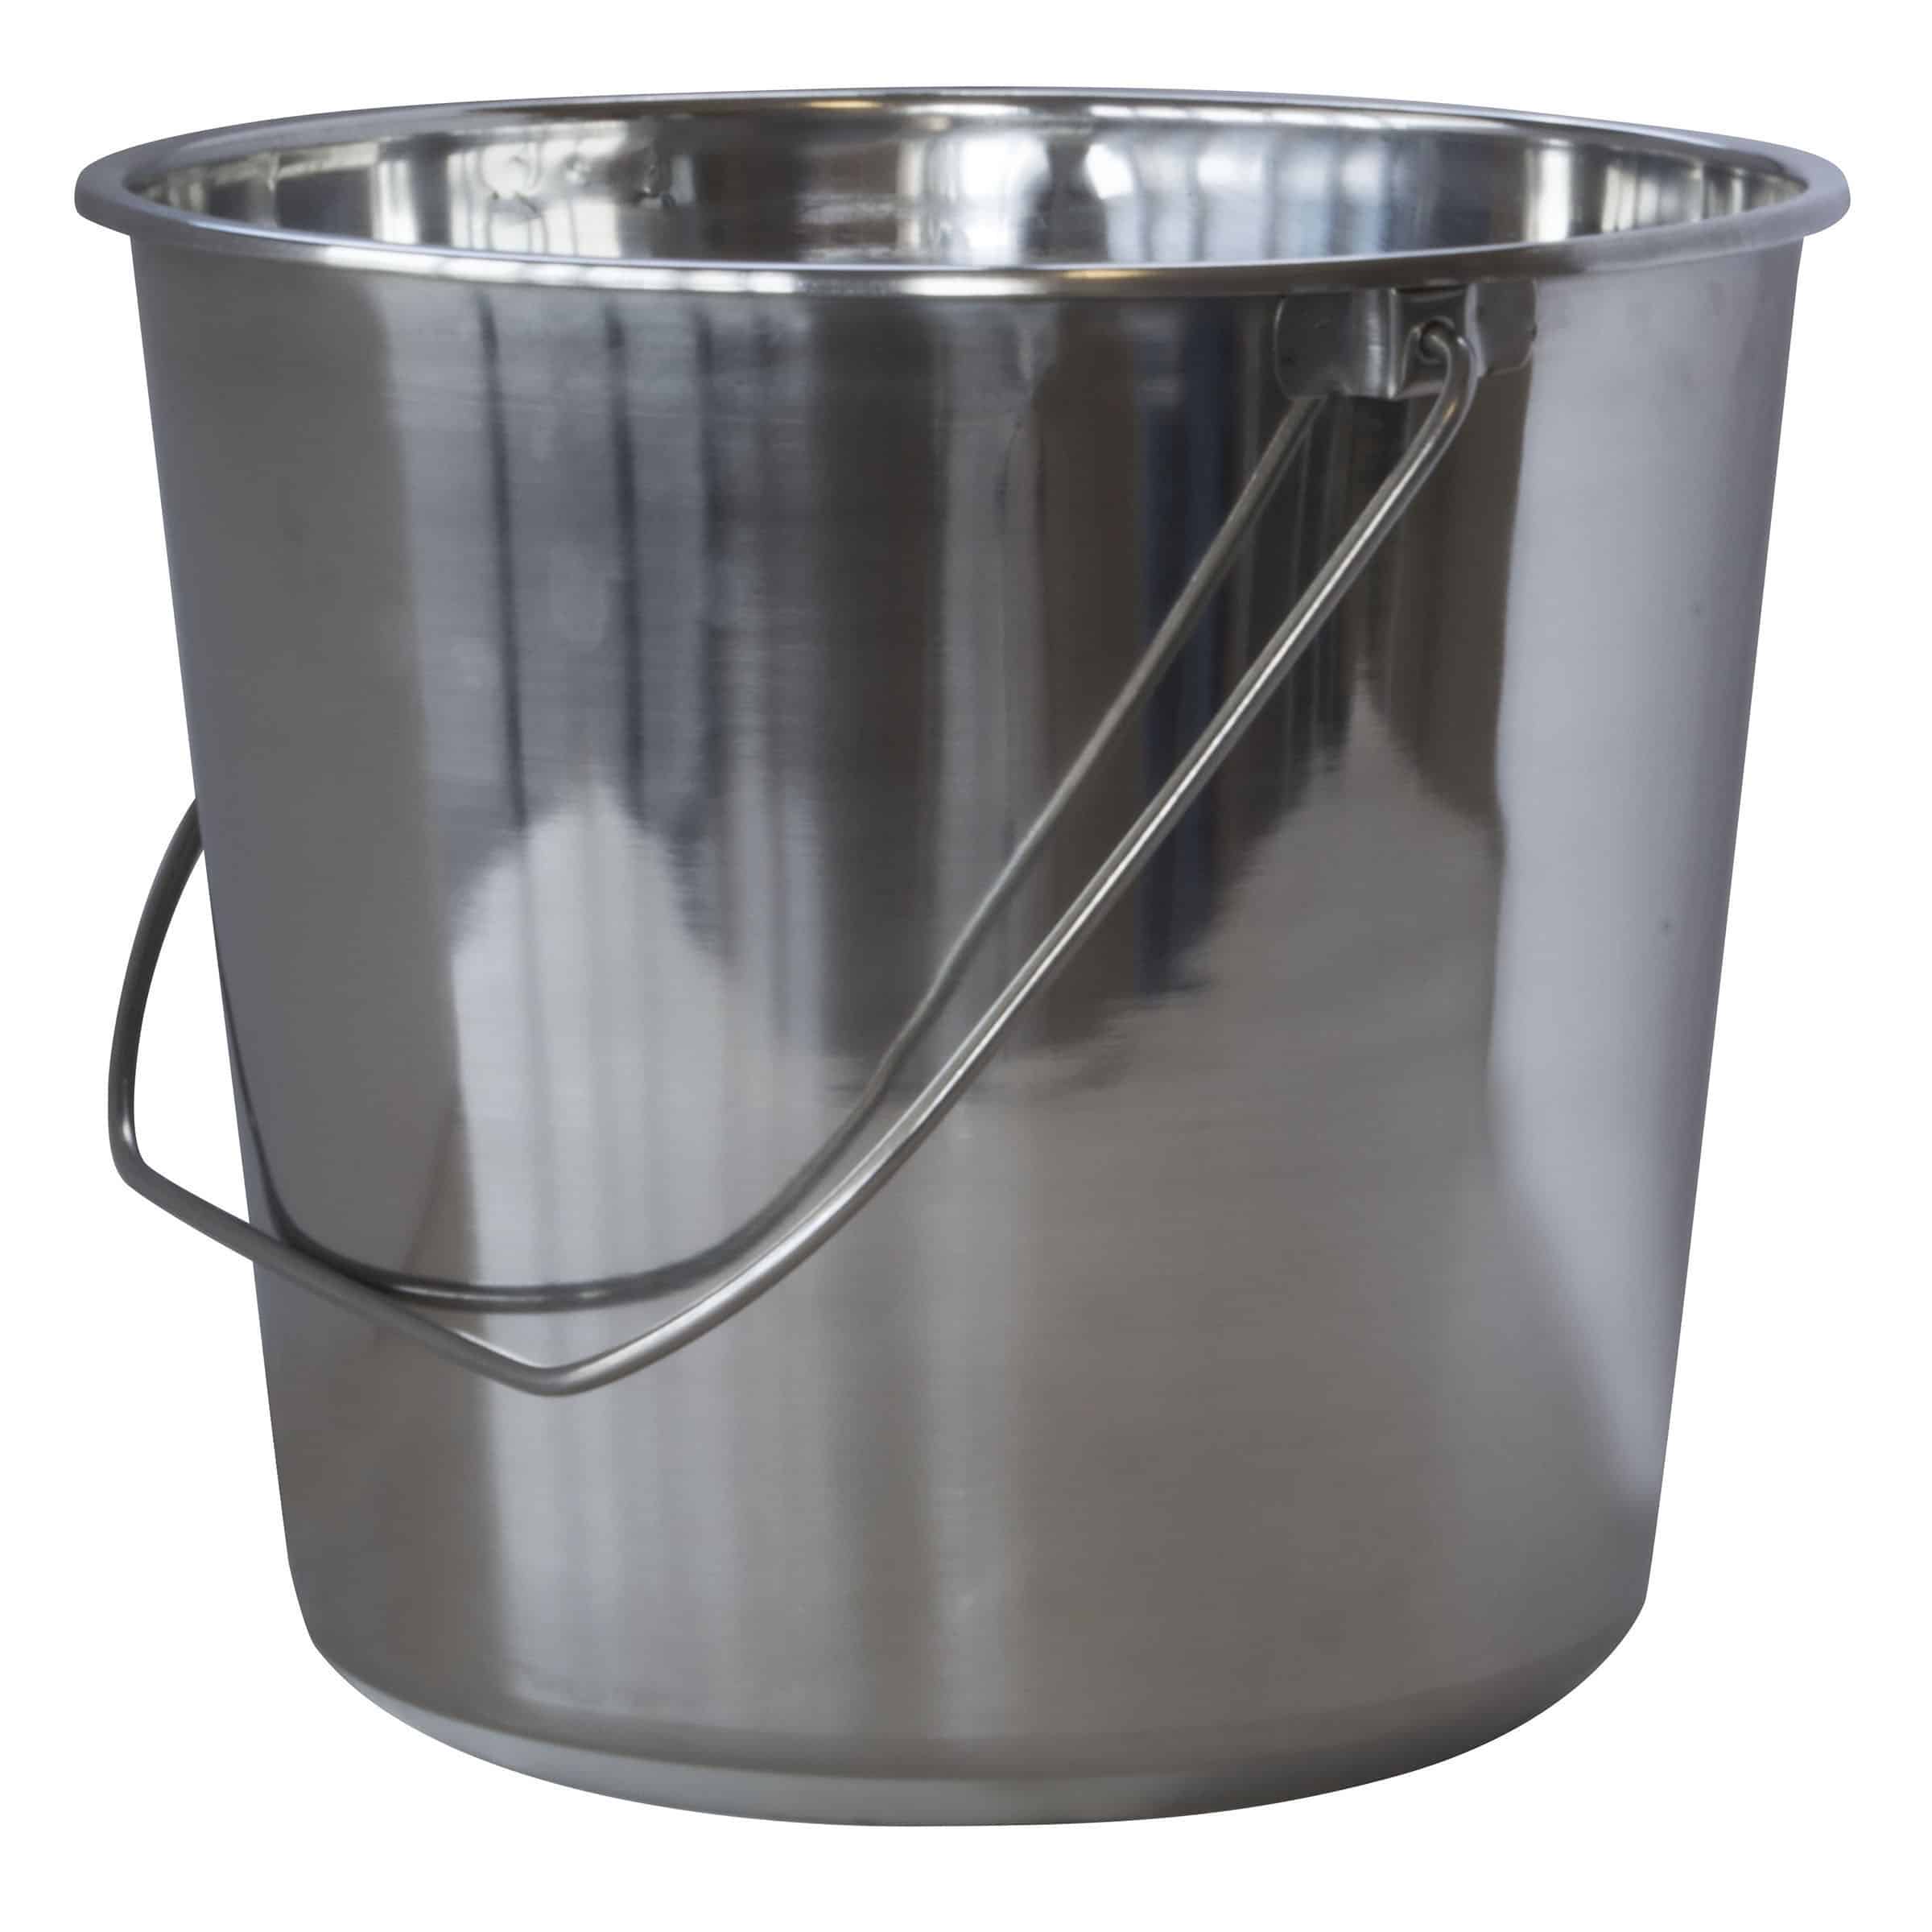 Stainless Steel Bucket 2.37 Gallon